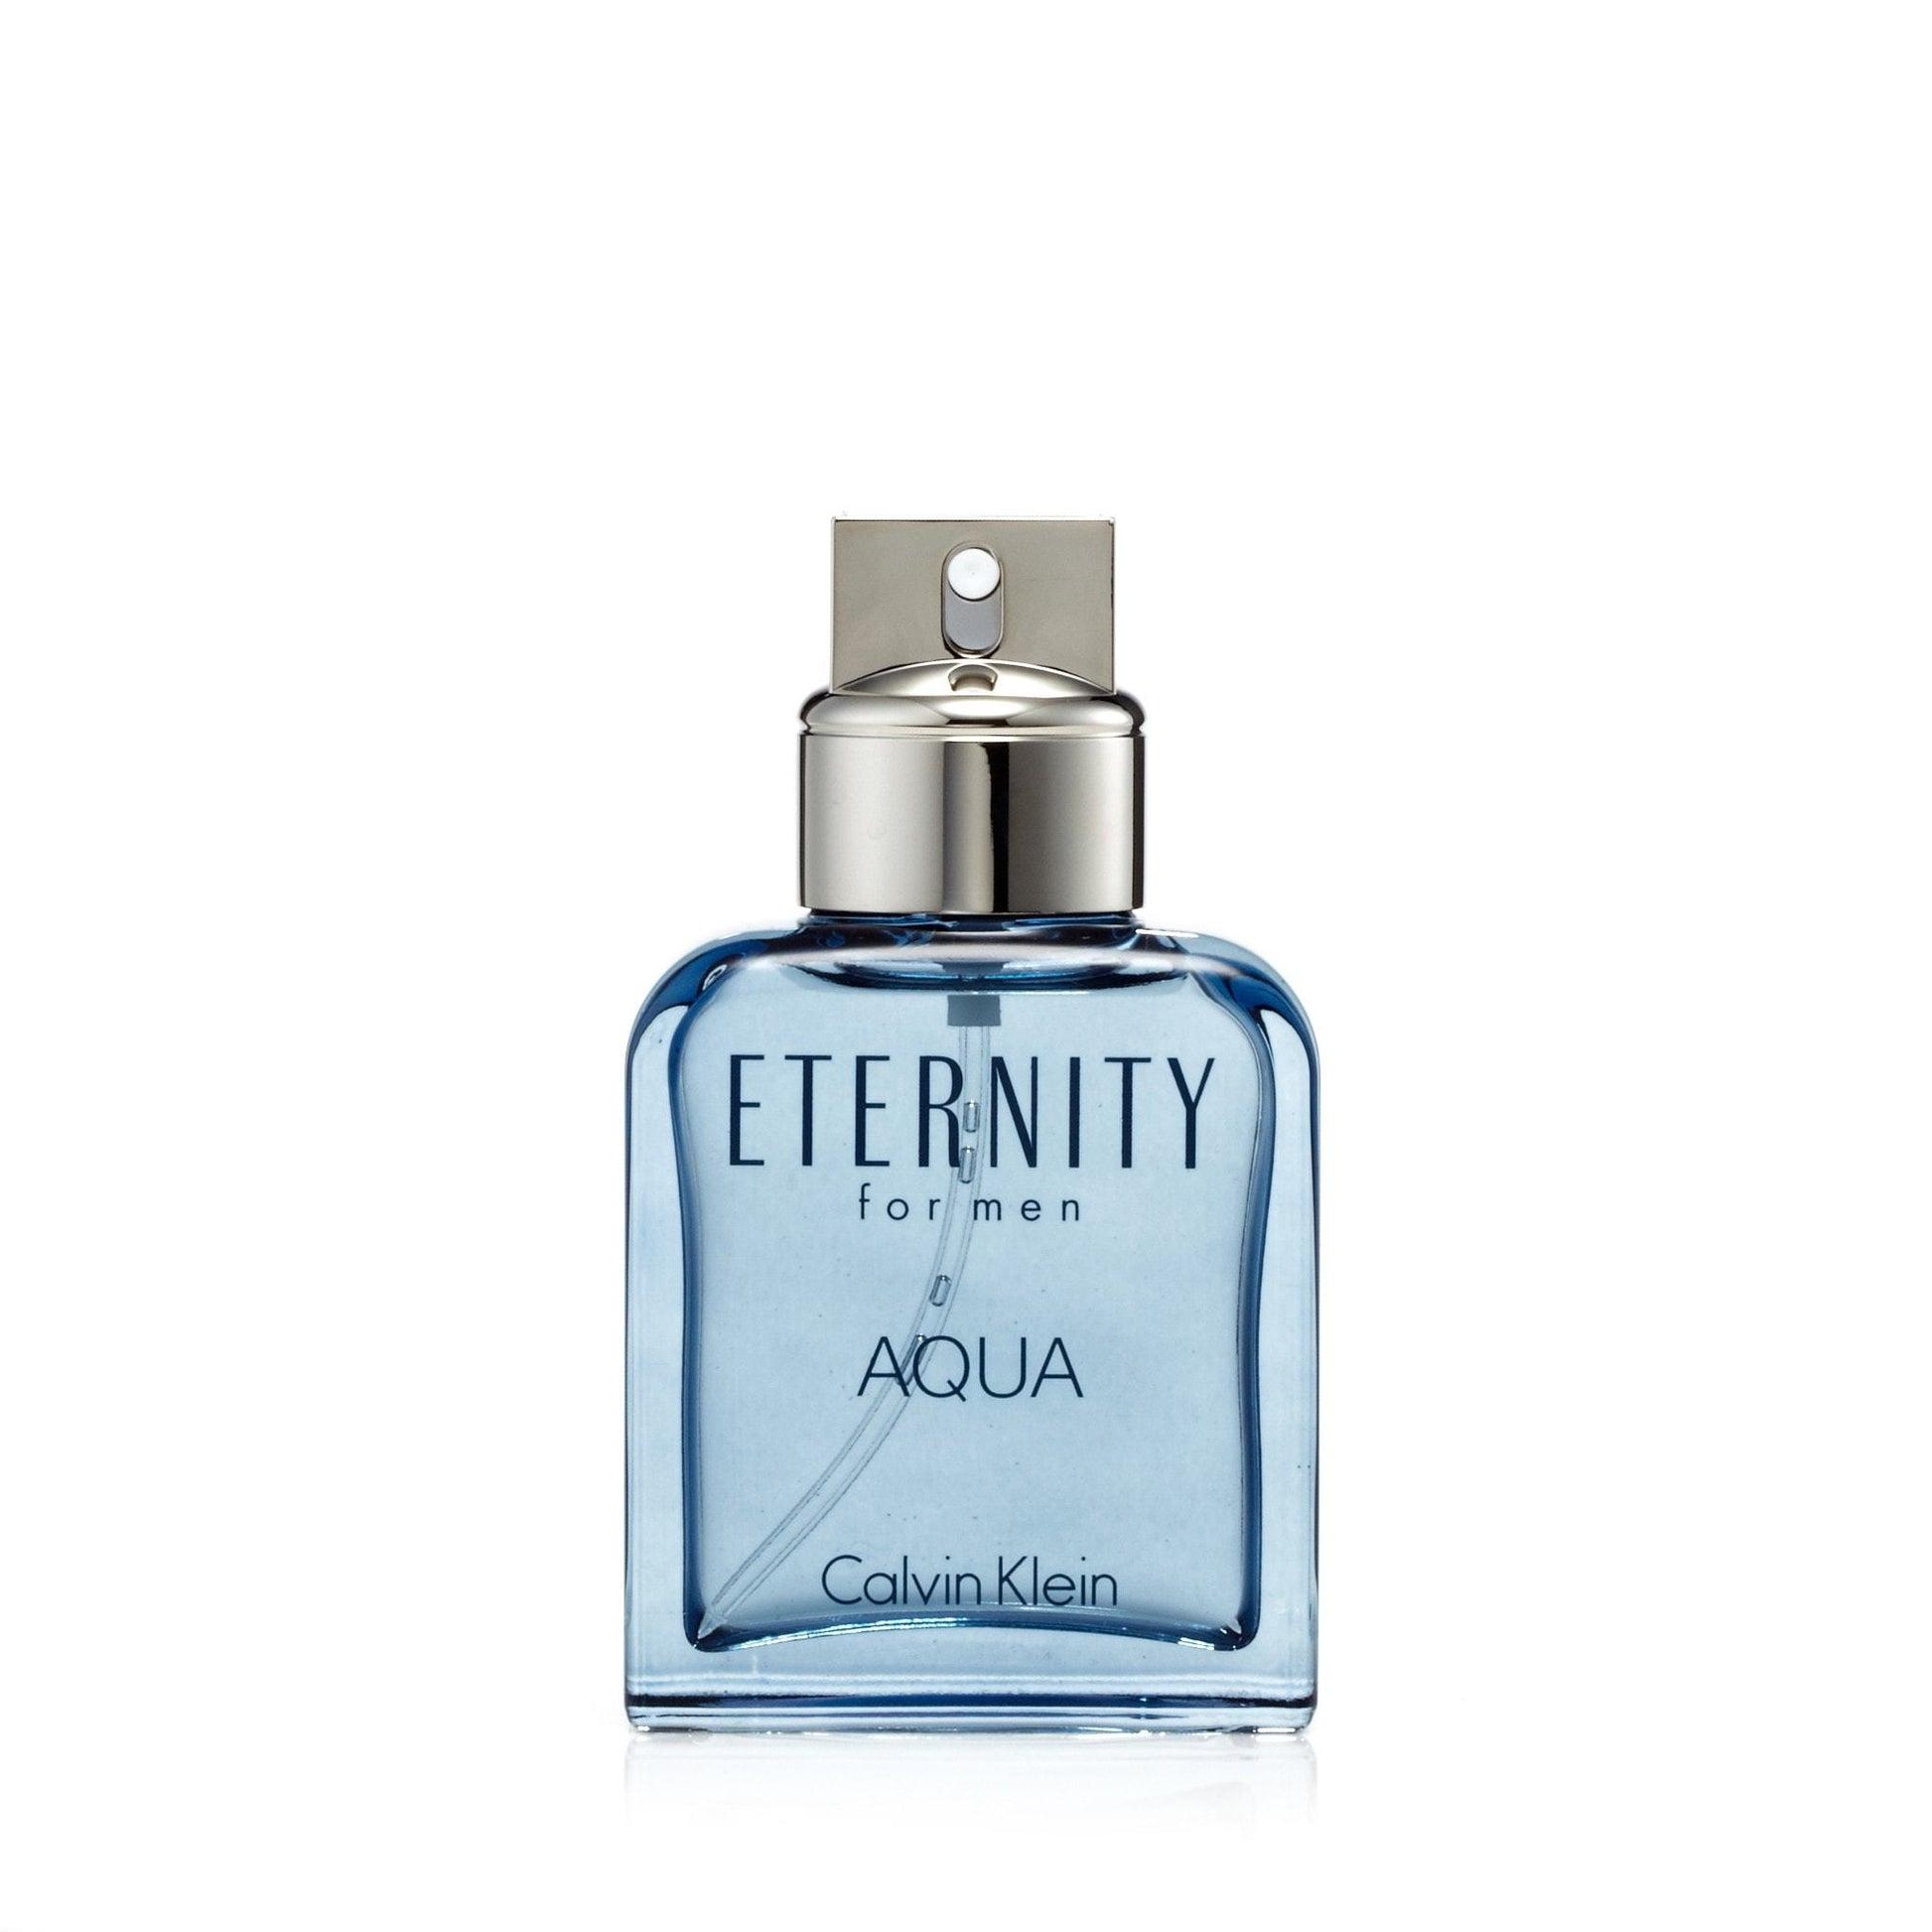 Eternity Aqua Eau de Toilette Spray for Men by Calvin Klein, Product image 5